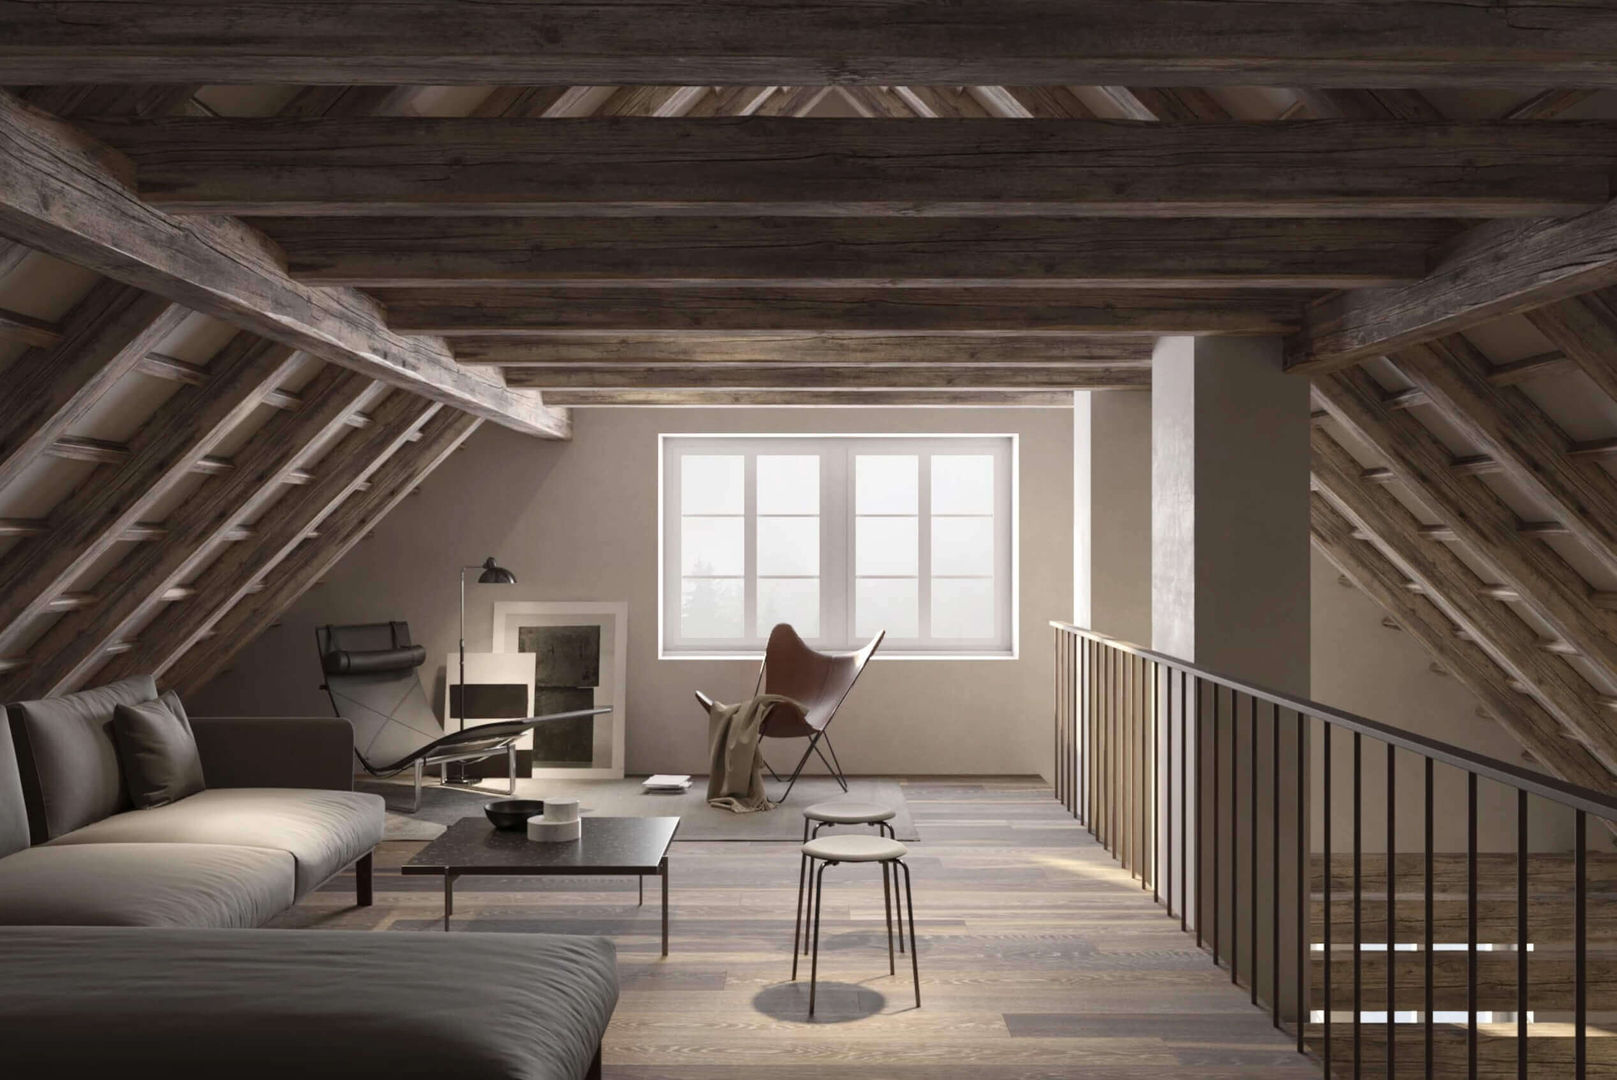 Diseño interior y Render para remodelación de viviendas Suiza - Visualización 3D, Render4tomorrow Render4tomorrow Dak